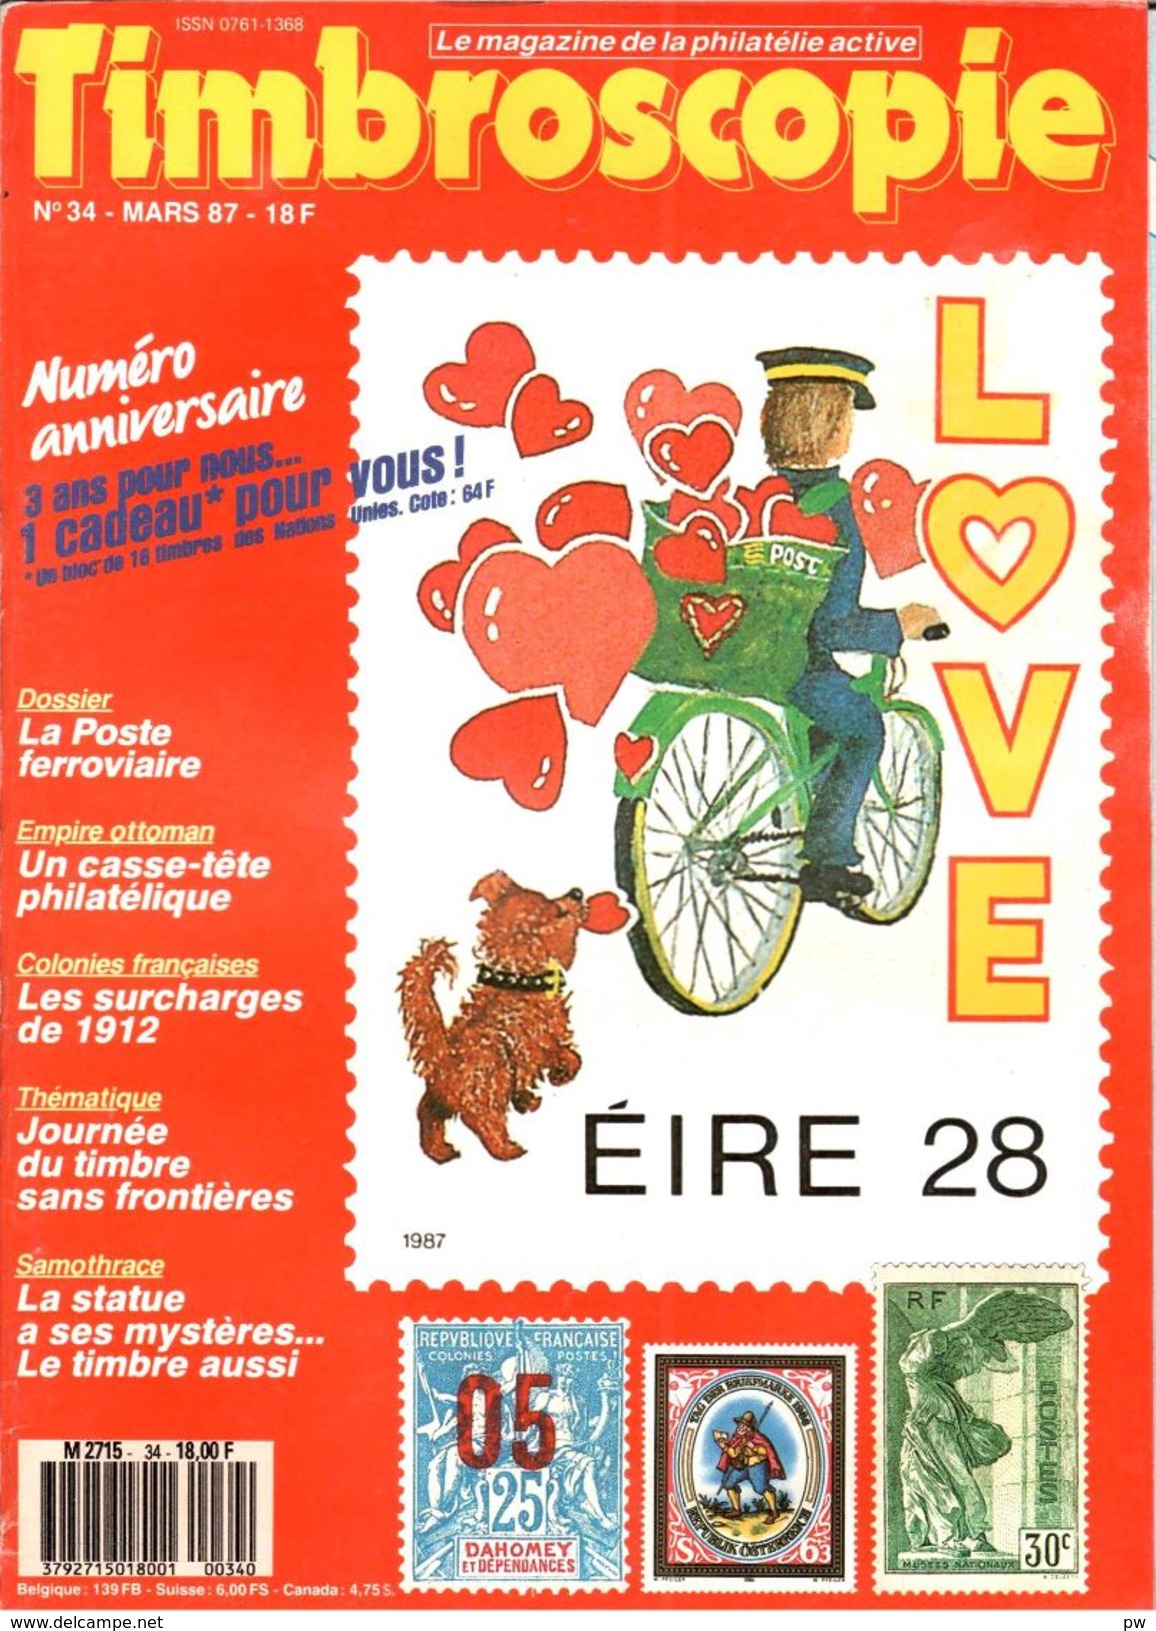 REVUE TIMBROSCOPIE N° 34 De Mars 1987 - Français (àpd. 1941)